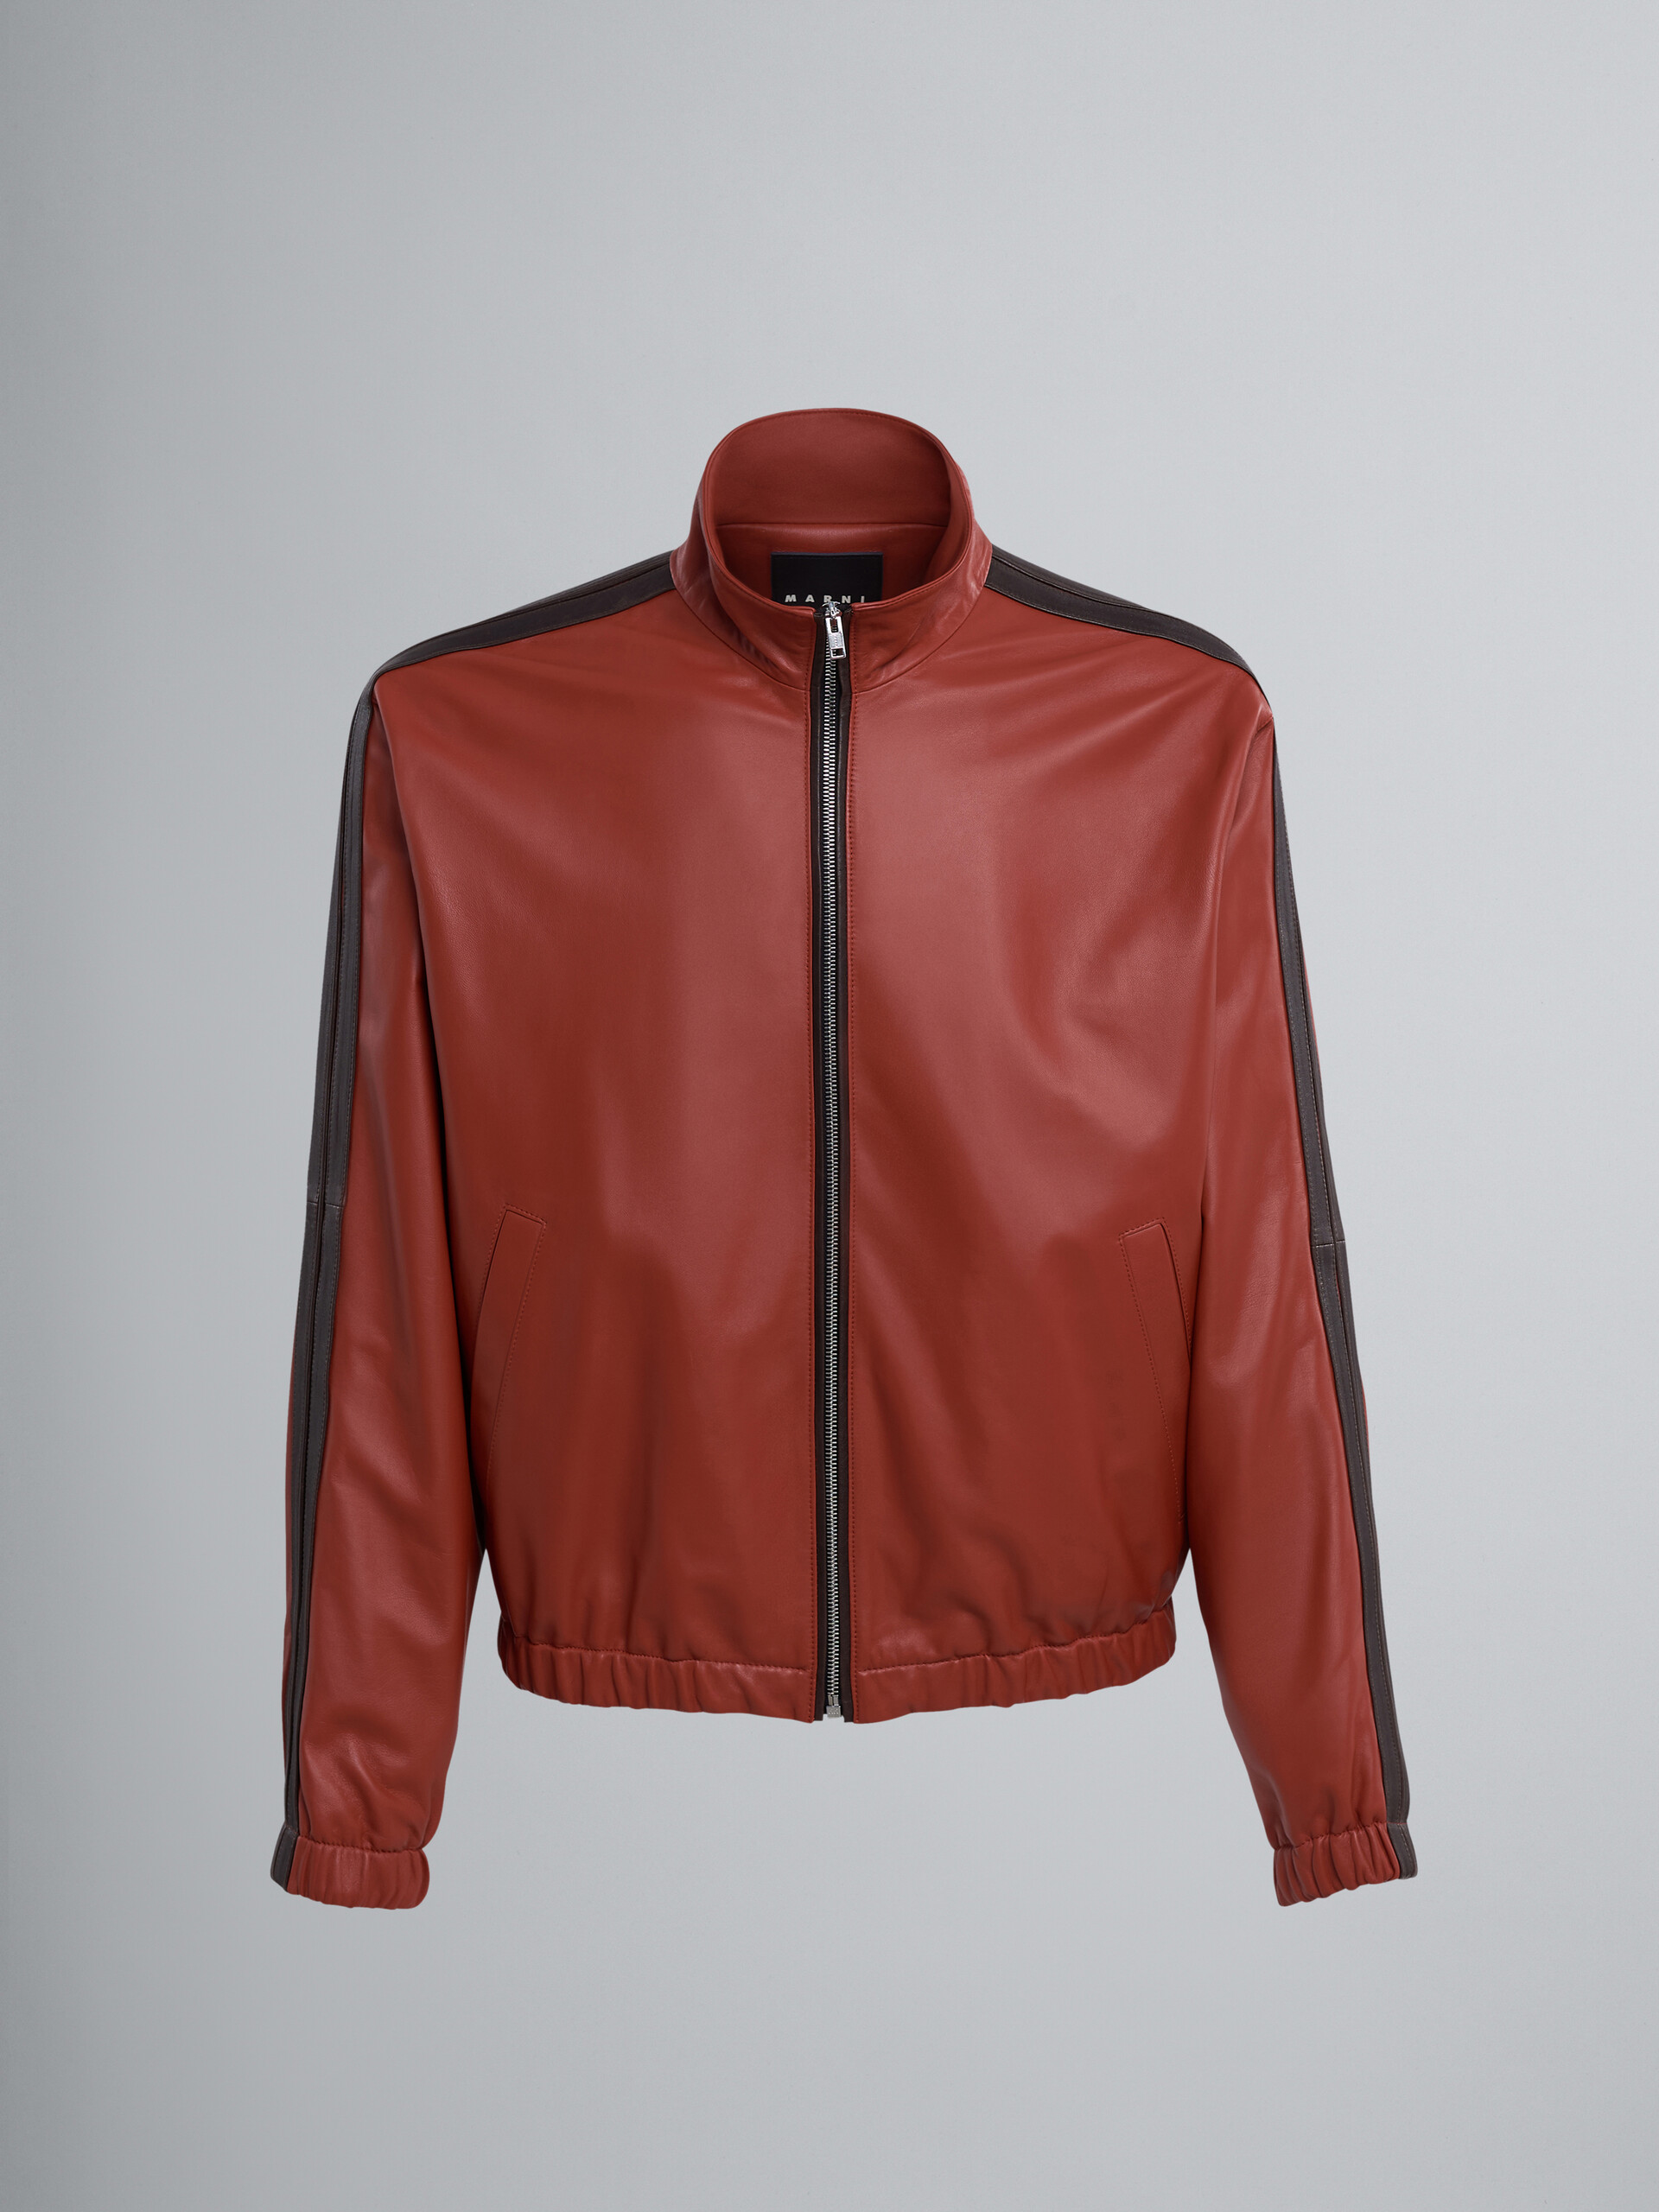 Lamb leather jacket - Jackets - Image 1